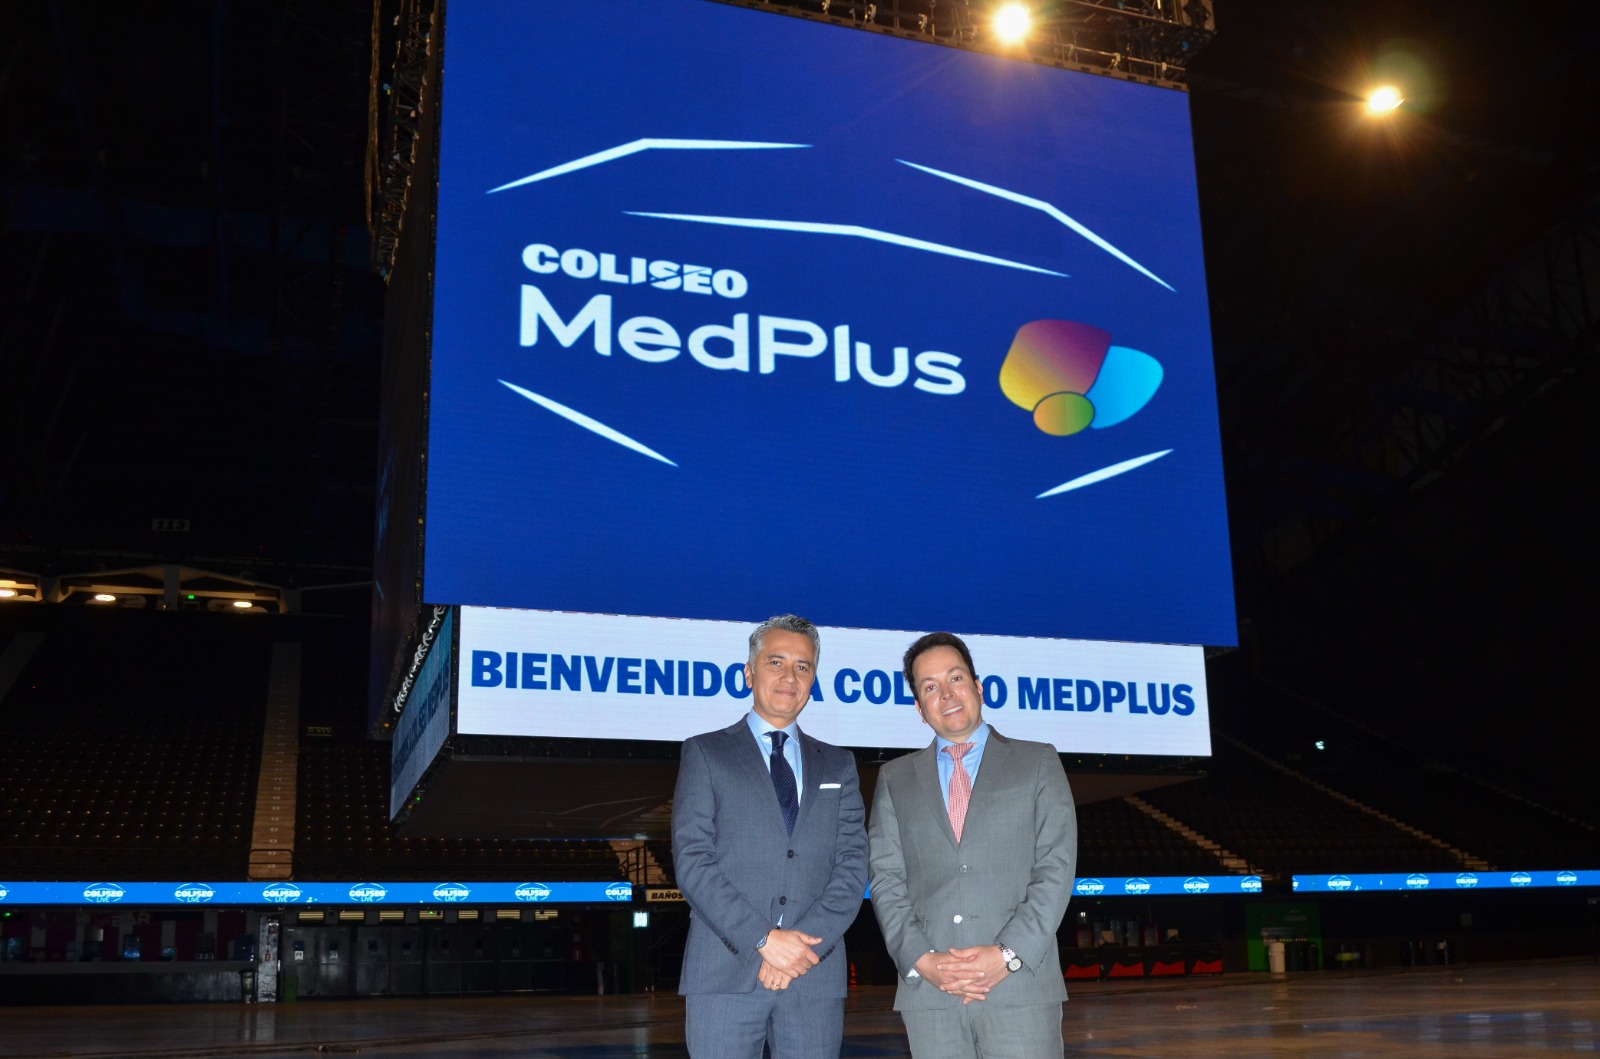 Coliseo MedPlus: Un Año de Éxito y Salud en Entretenimiento